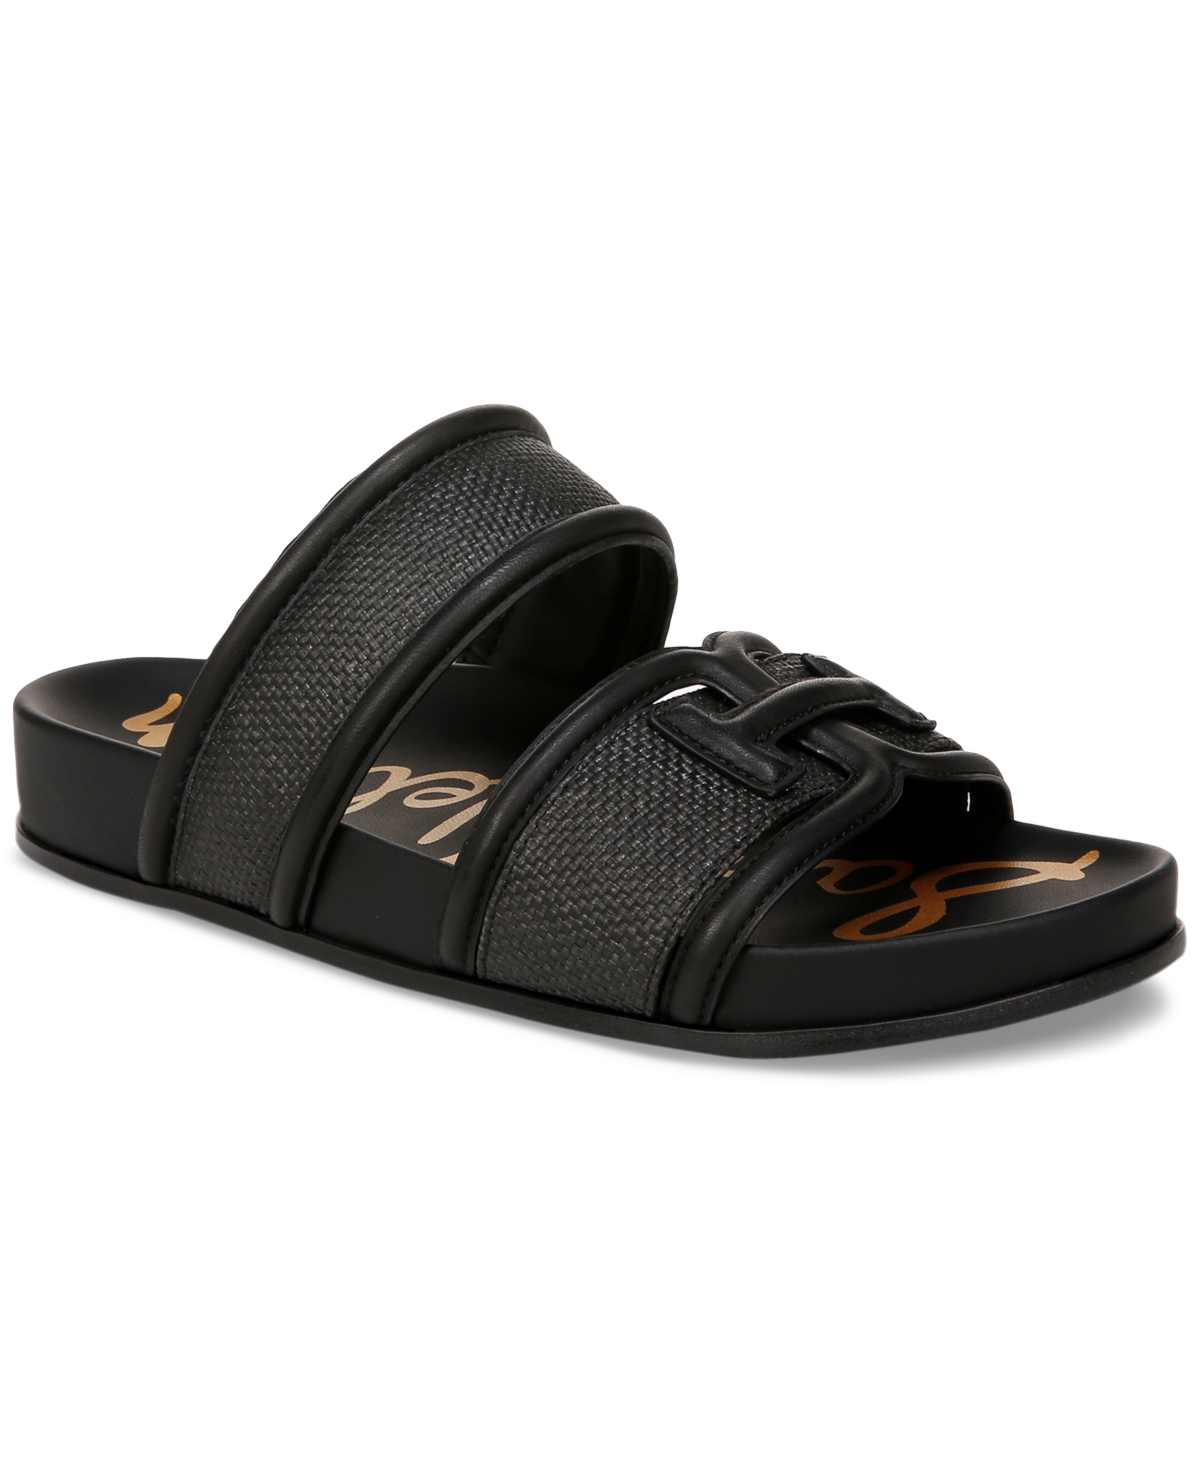 Rowan Emblem Slide Footbed Sandals - Black